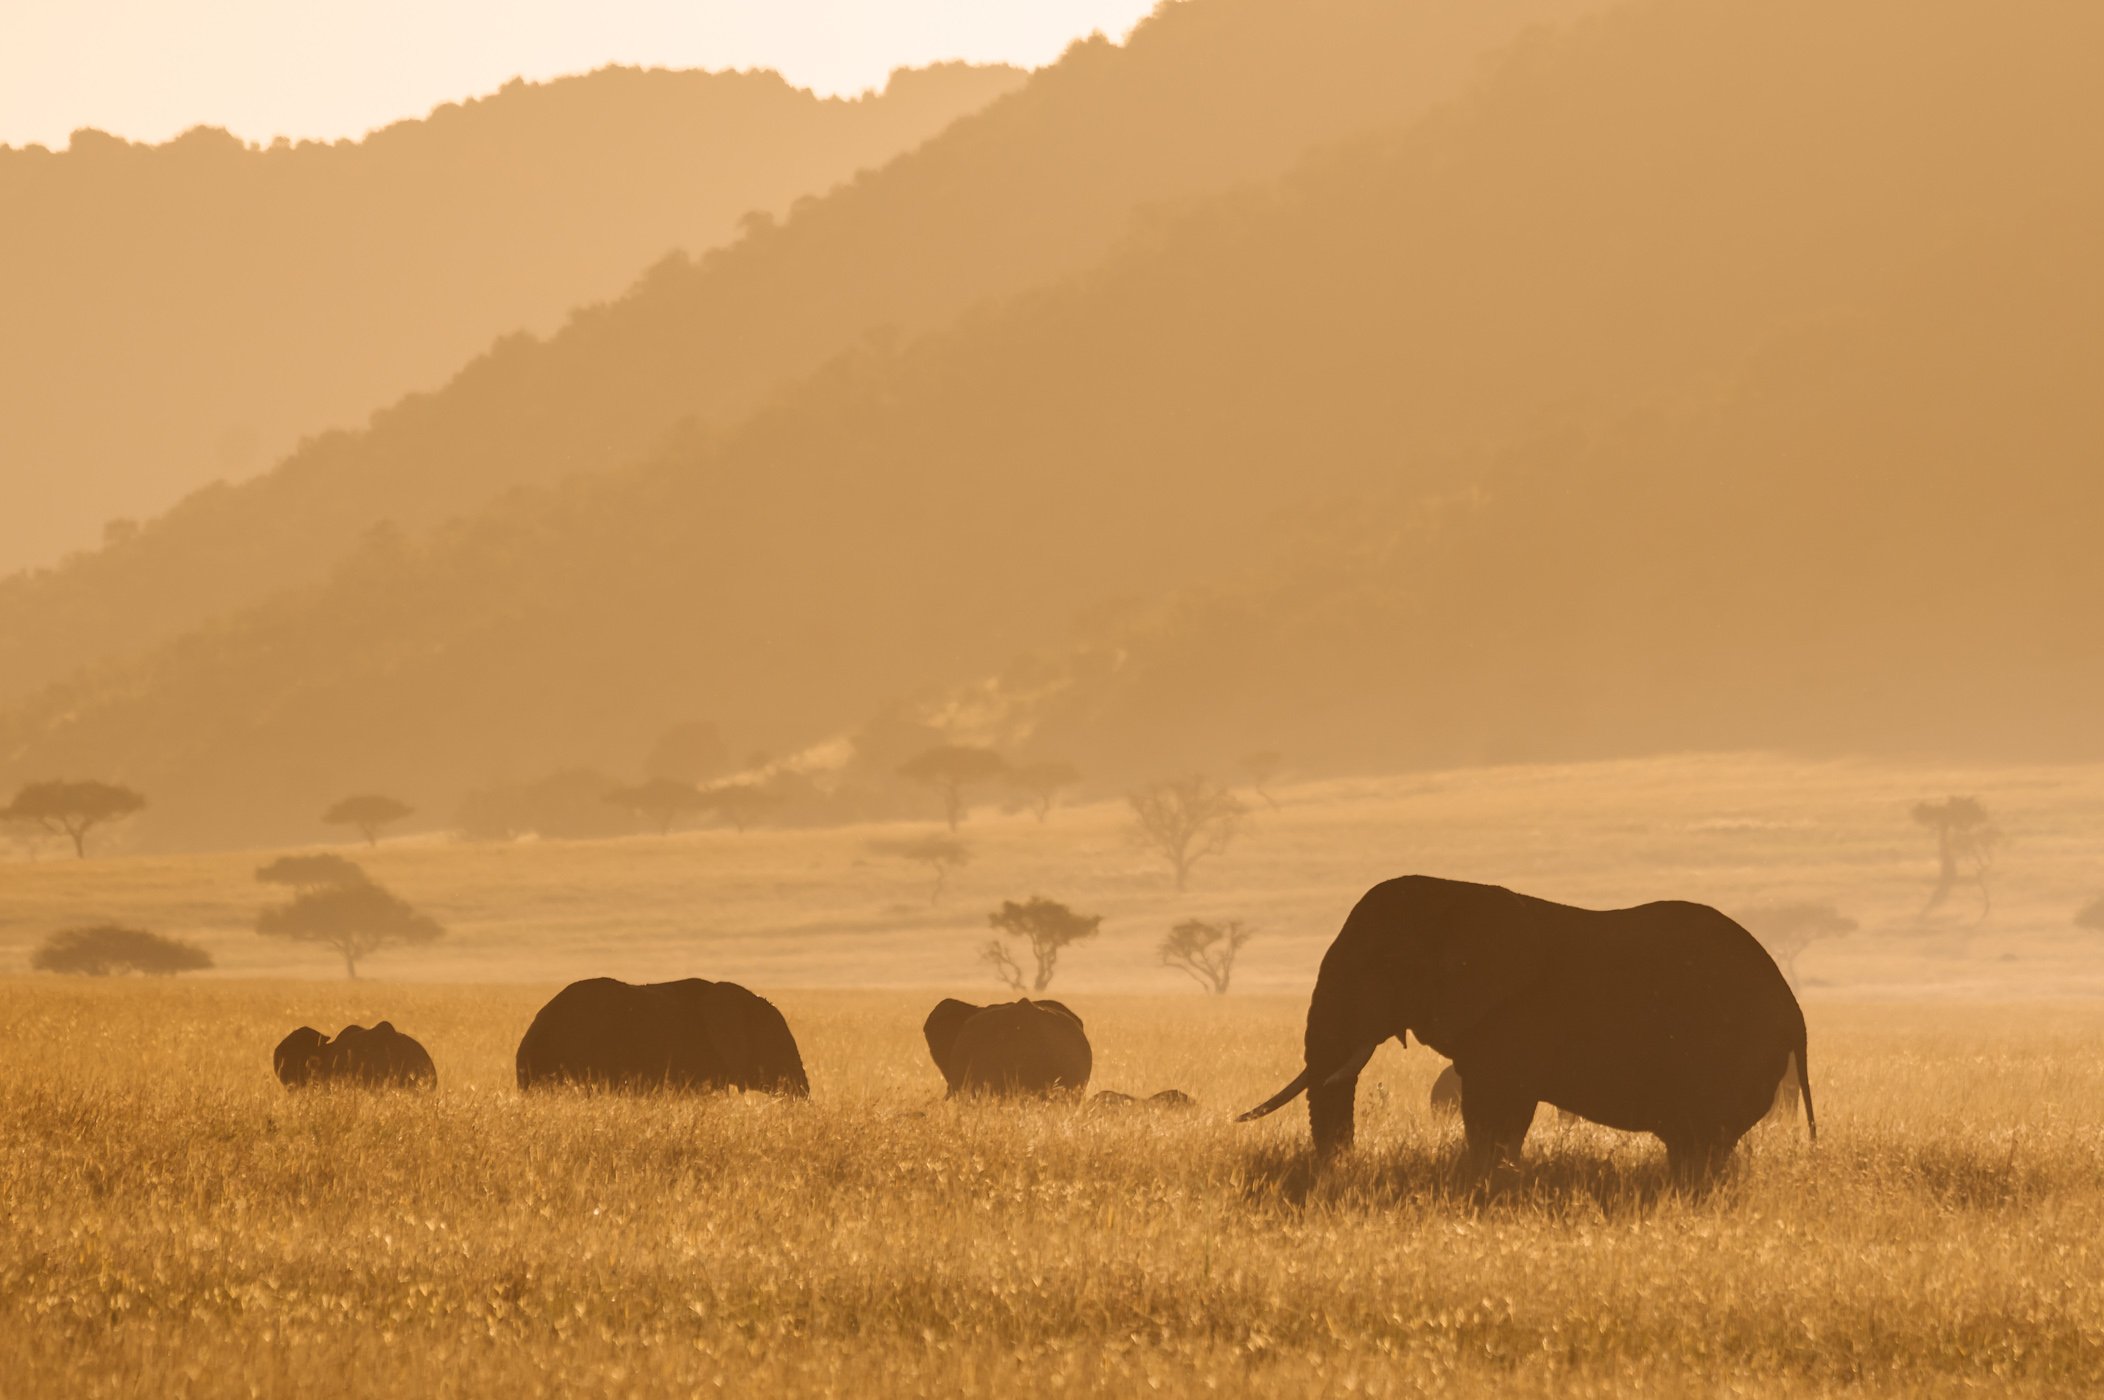 Elephants in the Mara Triangle in Kenya